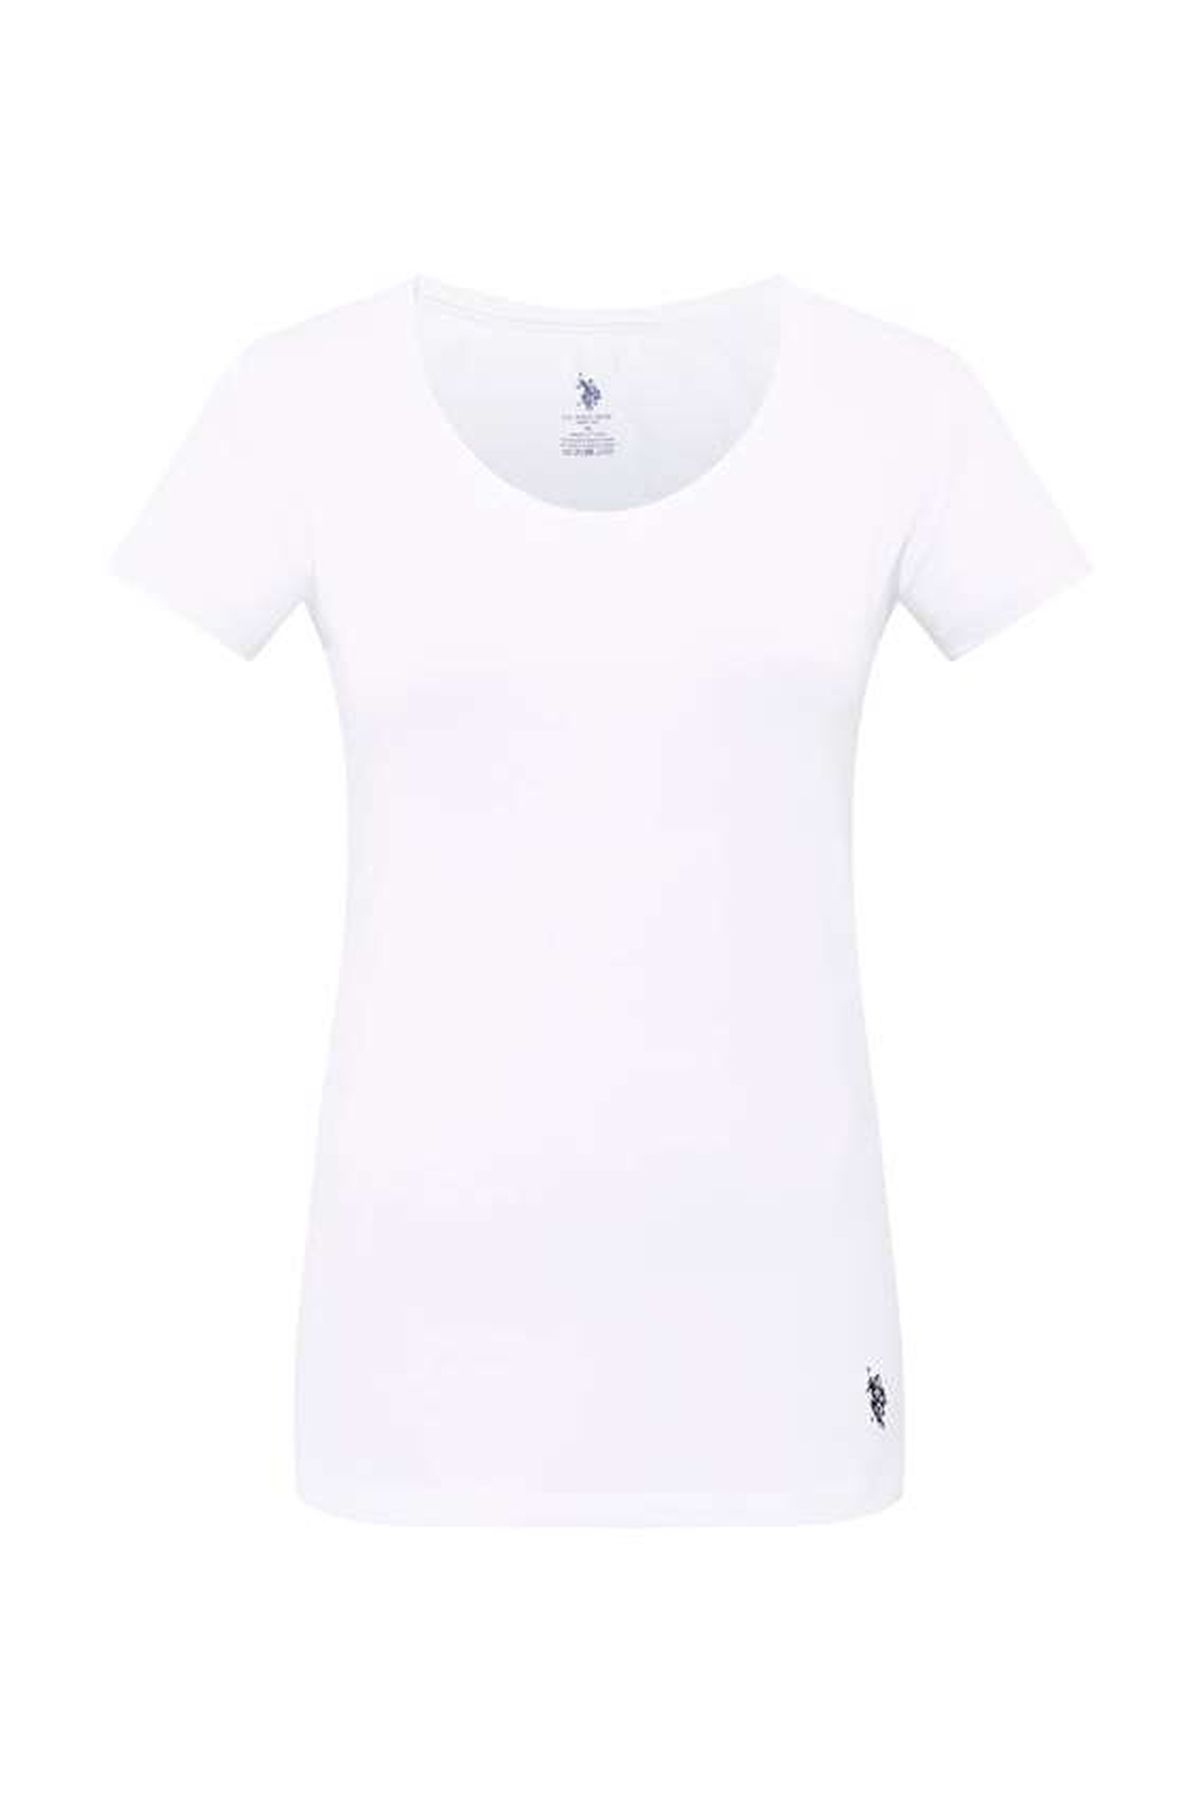 U.S. Polo Assn. 66003 Kadın Beyaz Derin Yuvarlak Yaka T-Shirt | Burdagel.com